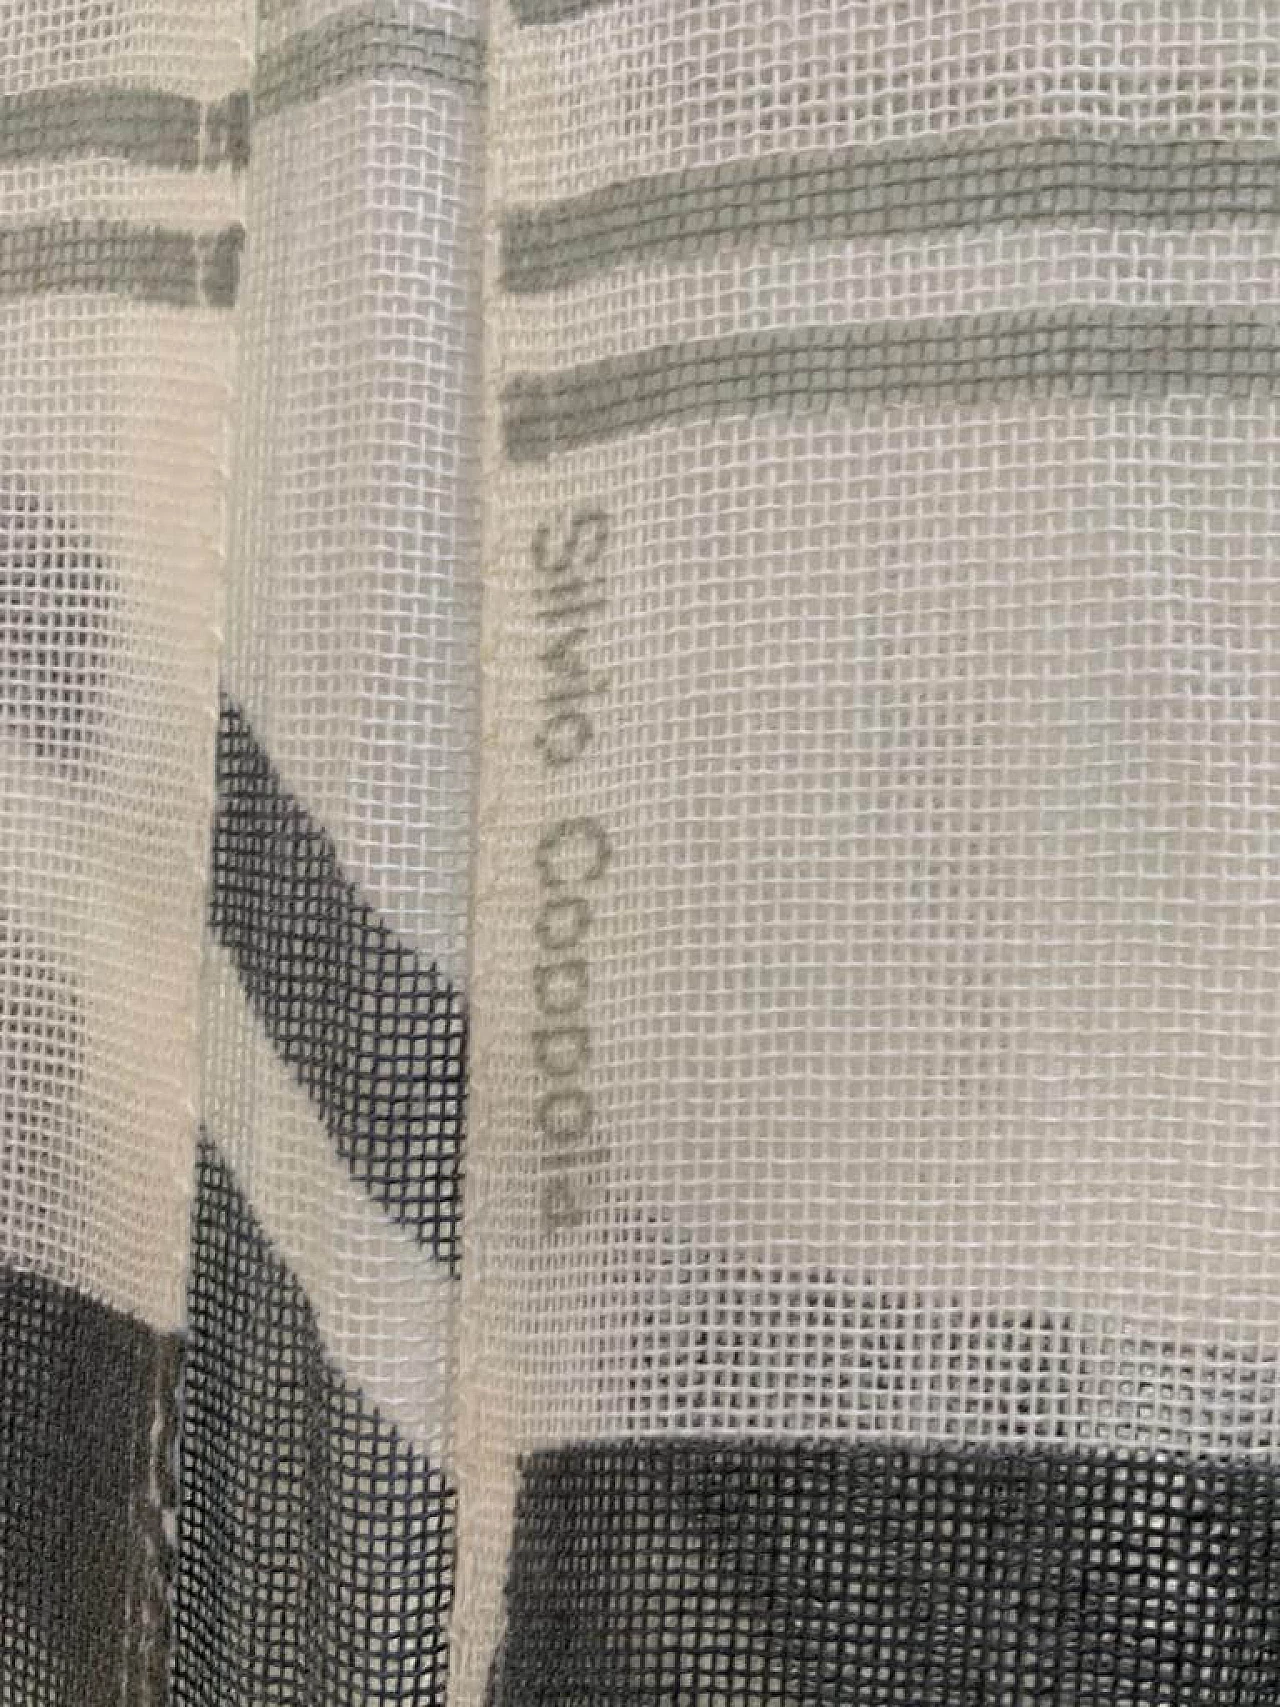 Fabric divider by Silvio Coppola for Tessitura di Mompiano, 1970s 1139339